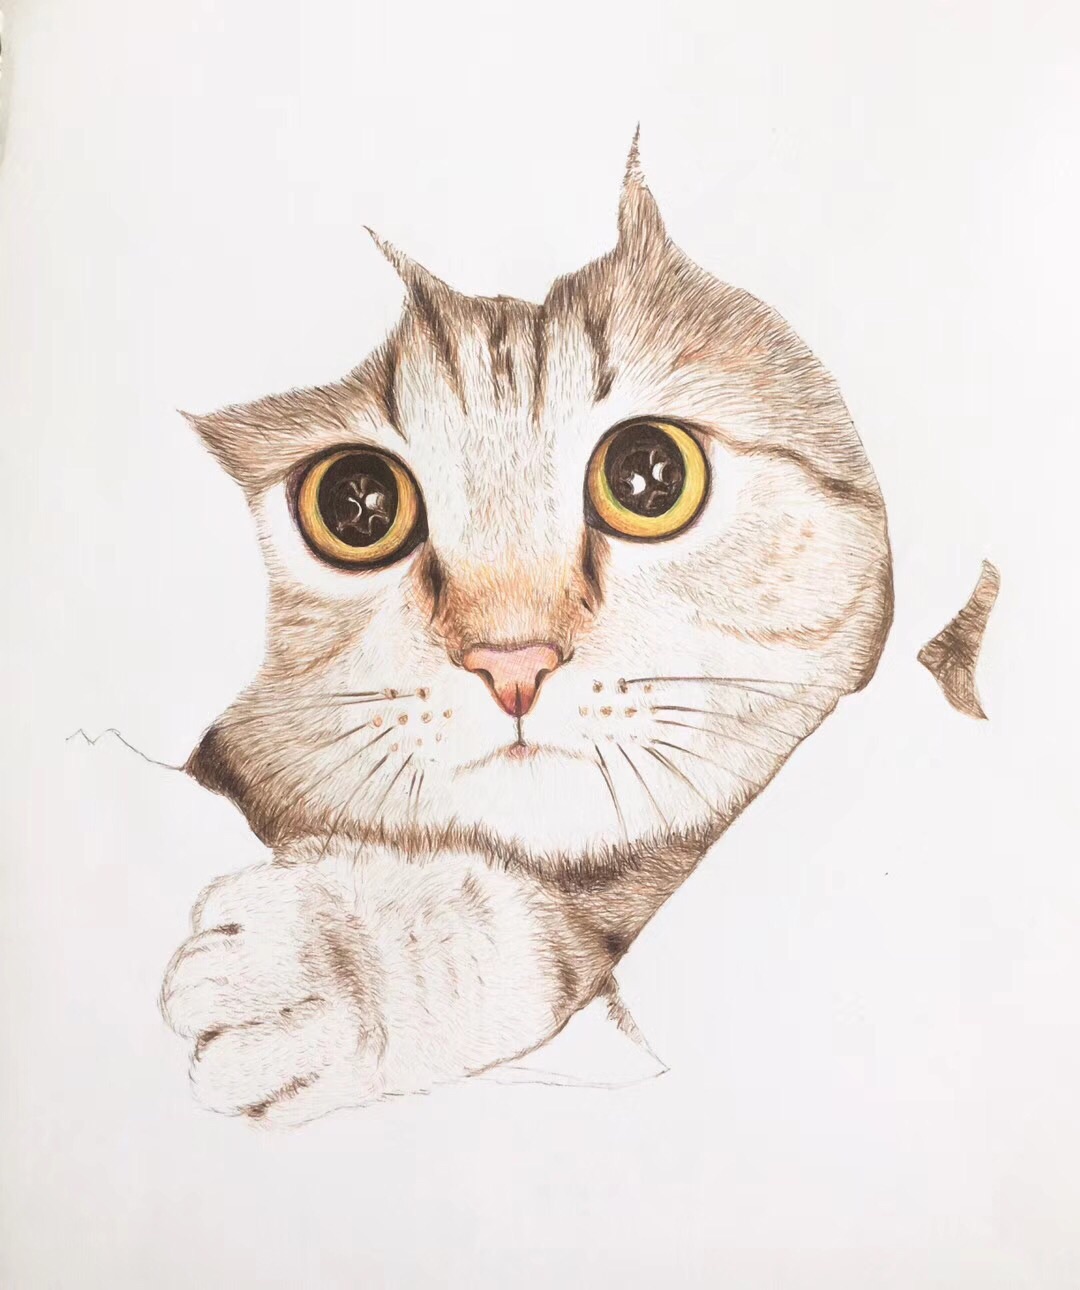 六步完成一幅彩色圆珠笔画
猫儿的眼睛是关键哦！